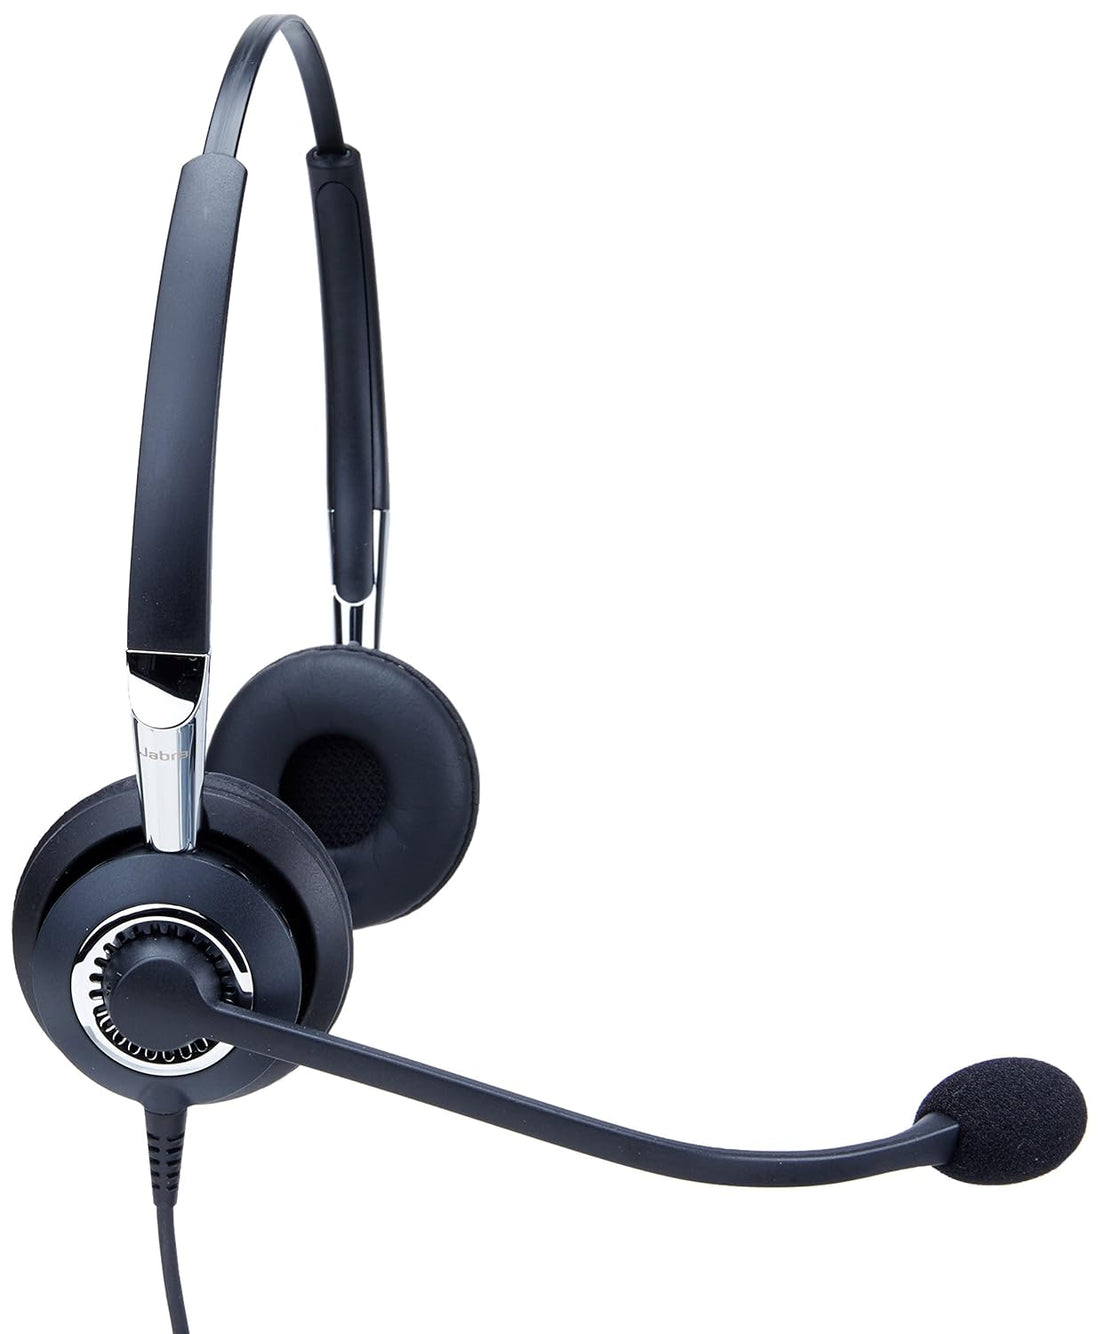 Jabra BIZ 2425 Duo Corded Headset for Deskphone